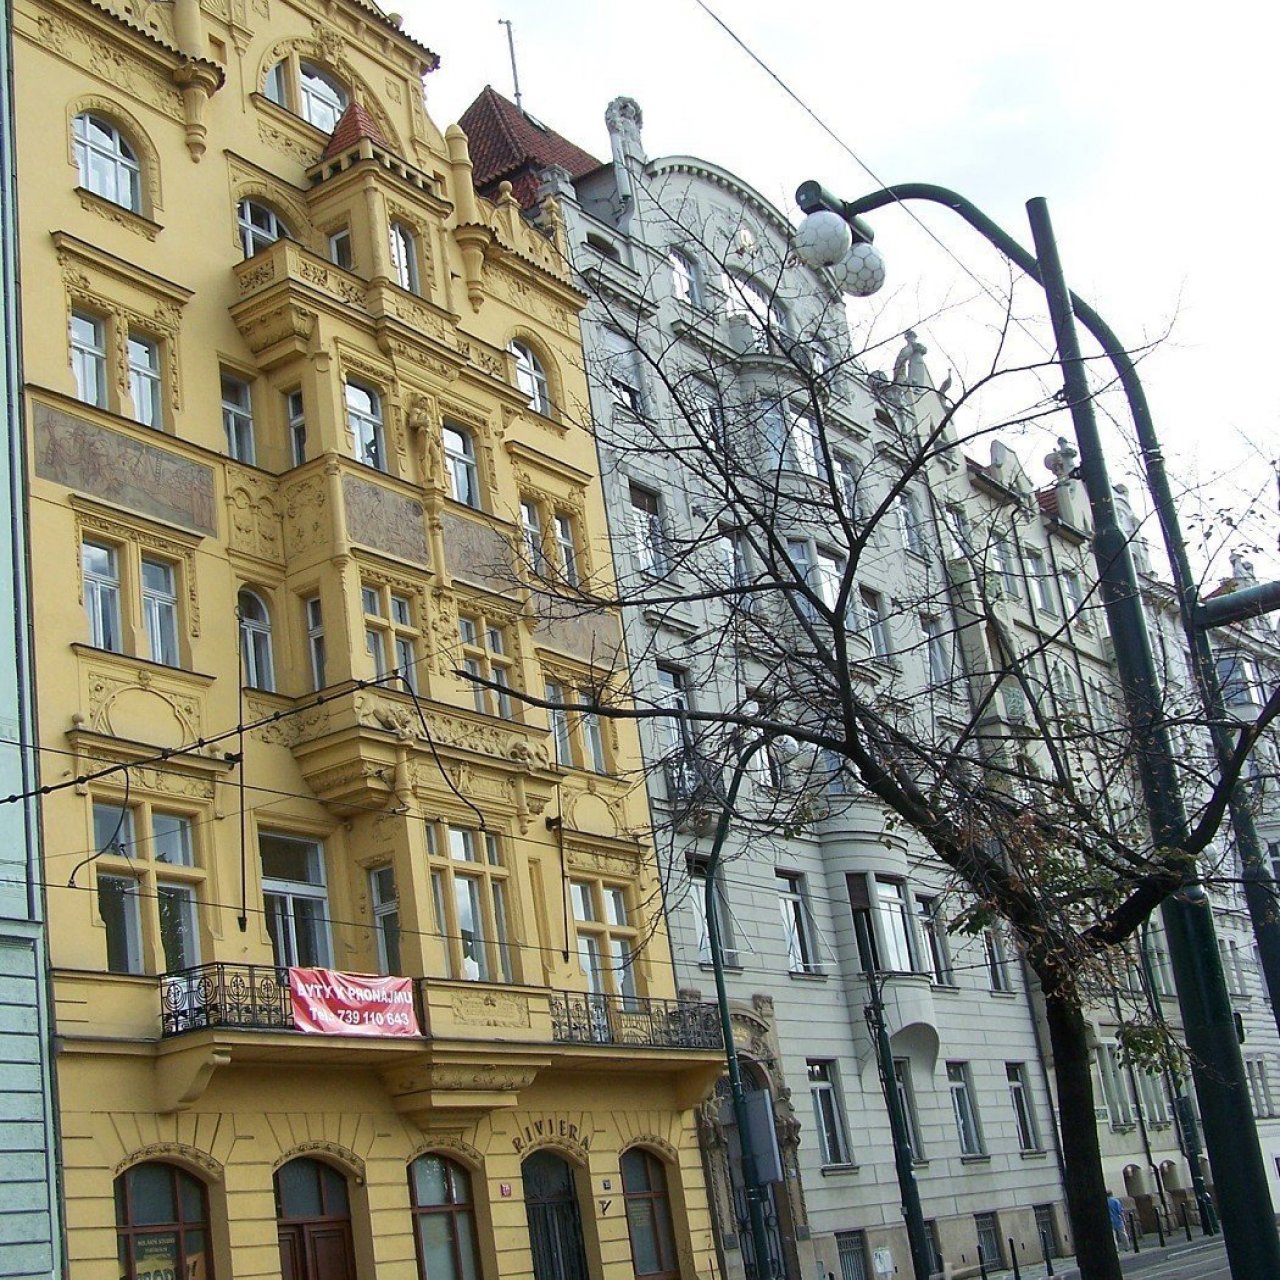 Praha - Masarykovo nábřeží 30